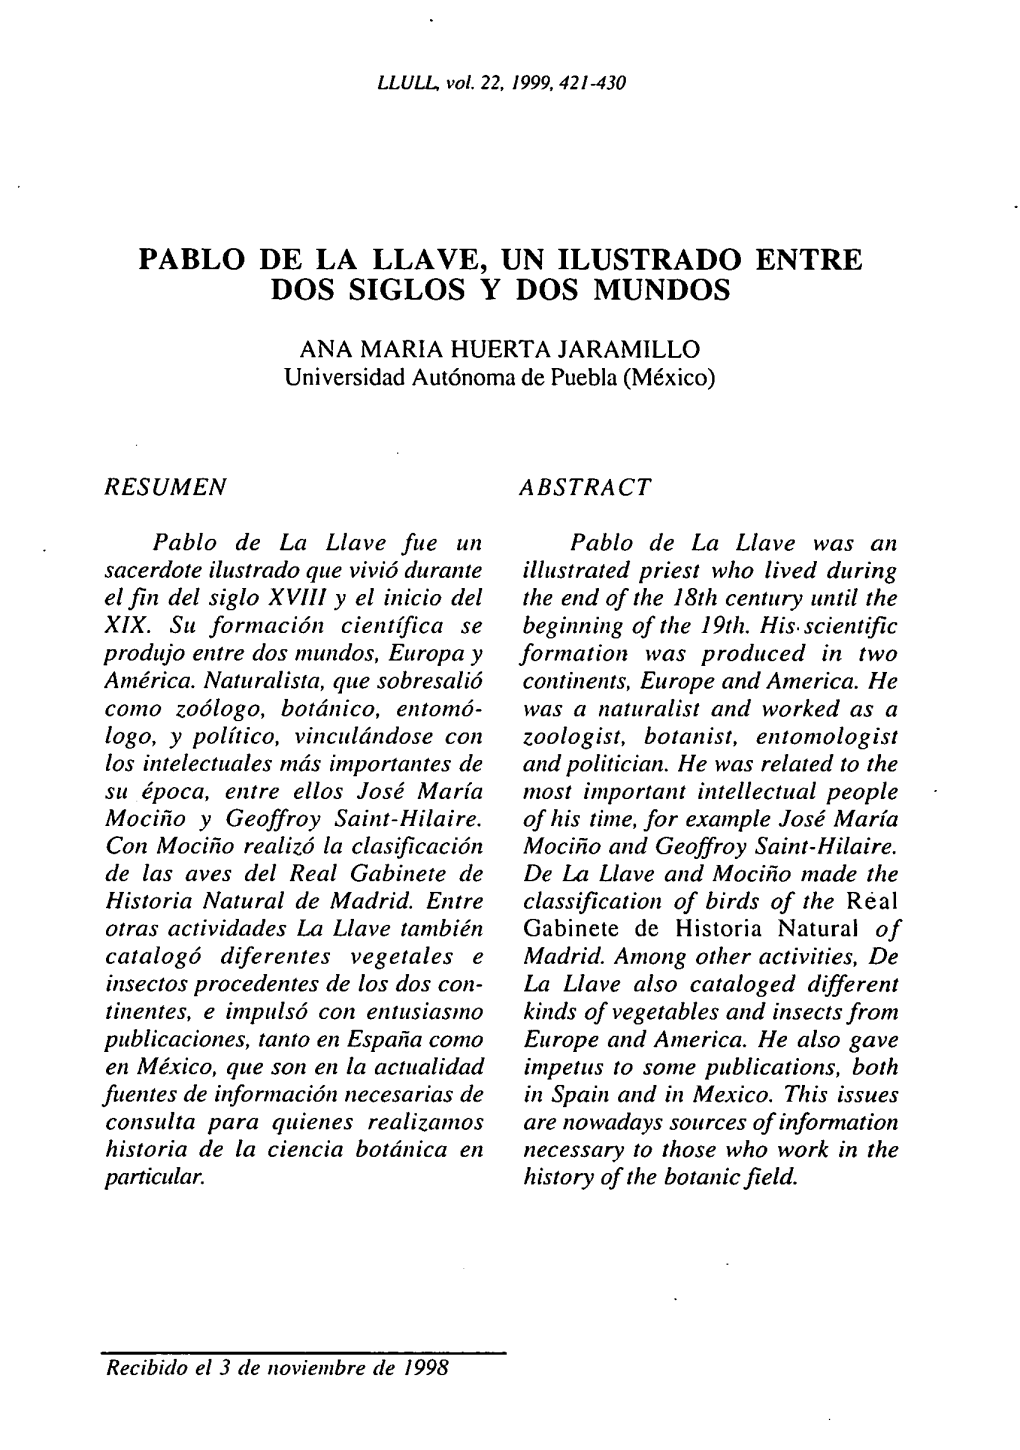 Pablo De La Llave, Un Ilustrado Entre Dos Siglos Y Dos Mundos